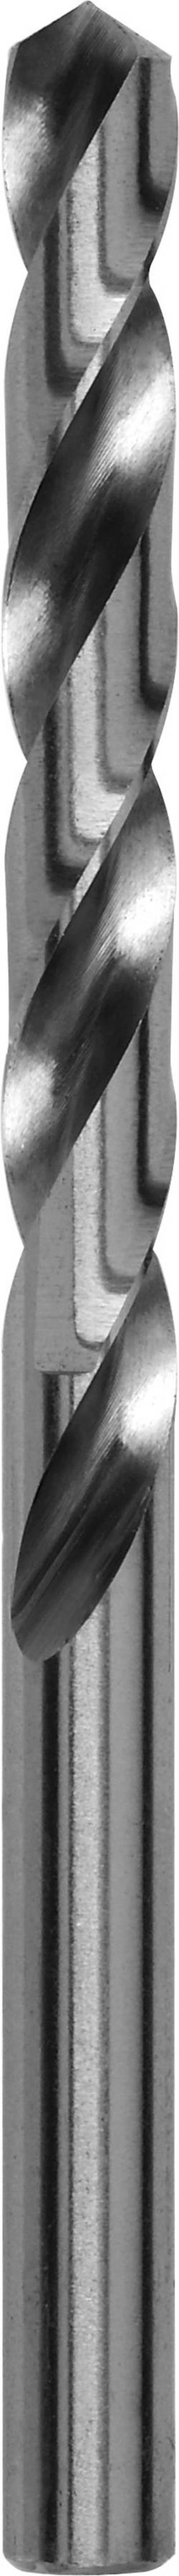 Kovový spirálový vrták Bosch Accessories 2609255040, 3.5 mm, 70 mm, HSS, 2 ks